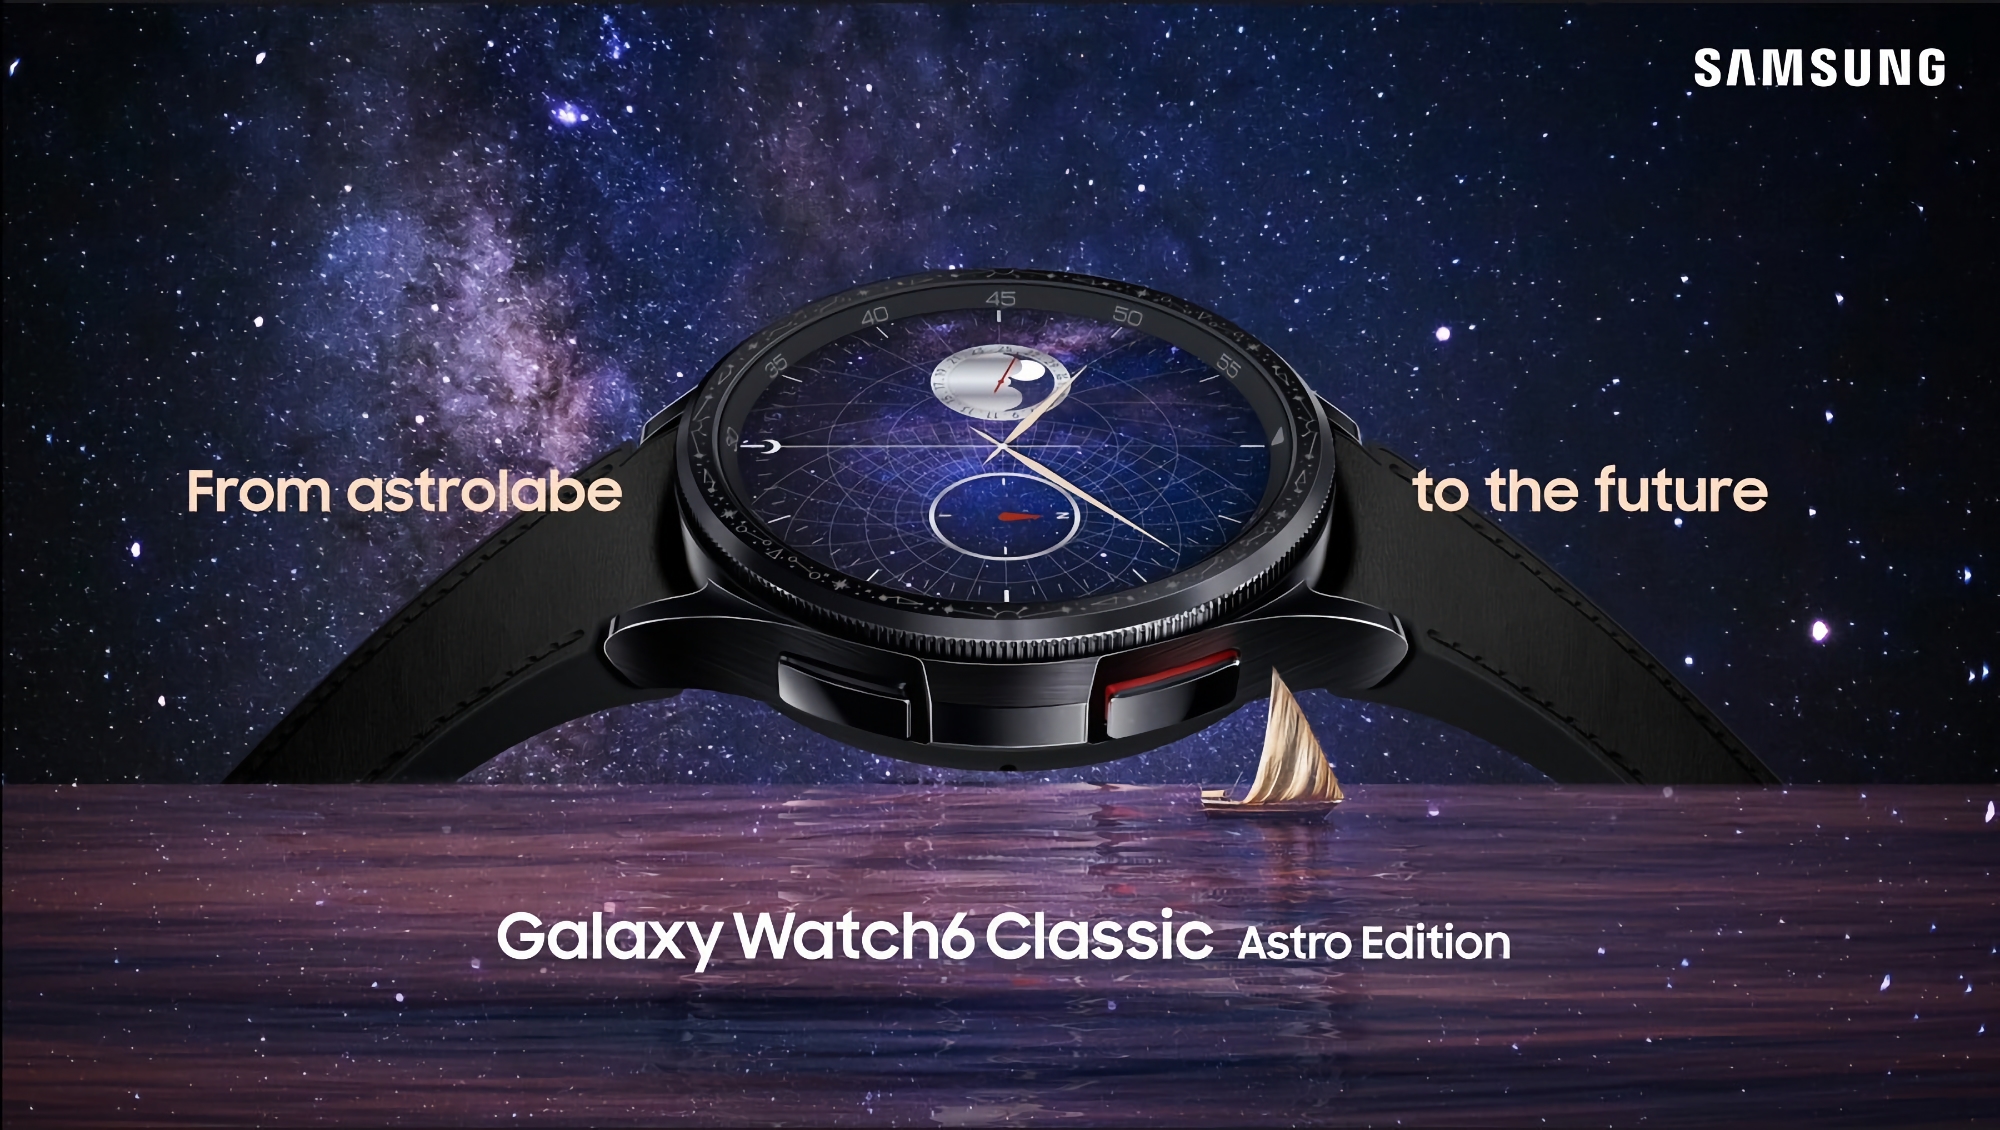 Samsung ha lanciato una versione speciale del Galaxy Watch 6 Classic Astro Edition con una lunetta a forma di astrolabio